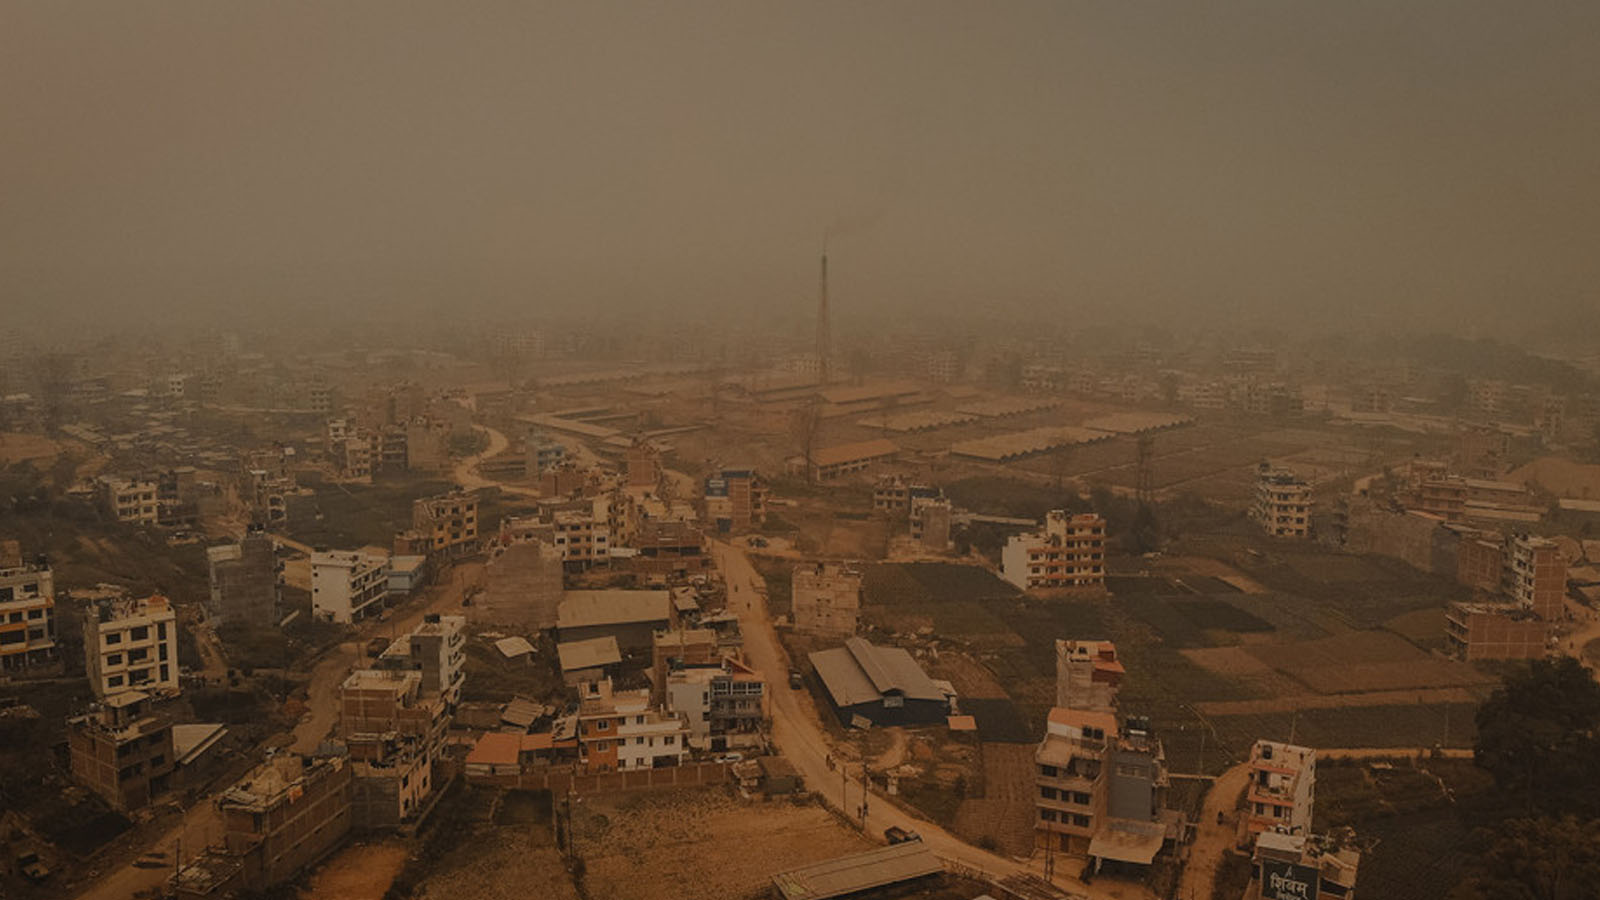 विश्वकै सबैभन्दा प्रदूषित शहरको सूचीमा आईतवार काठमाडौं ११औं स्थानमा